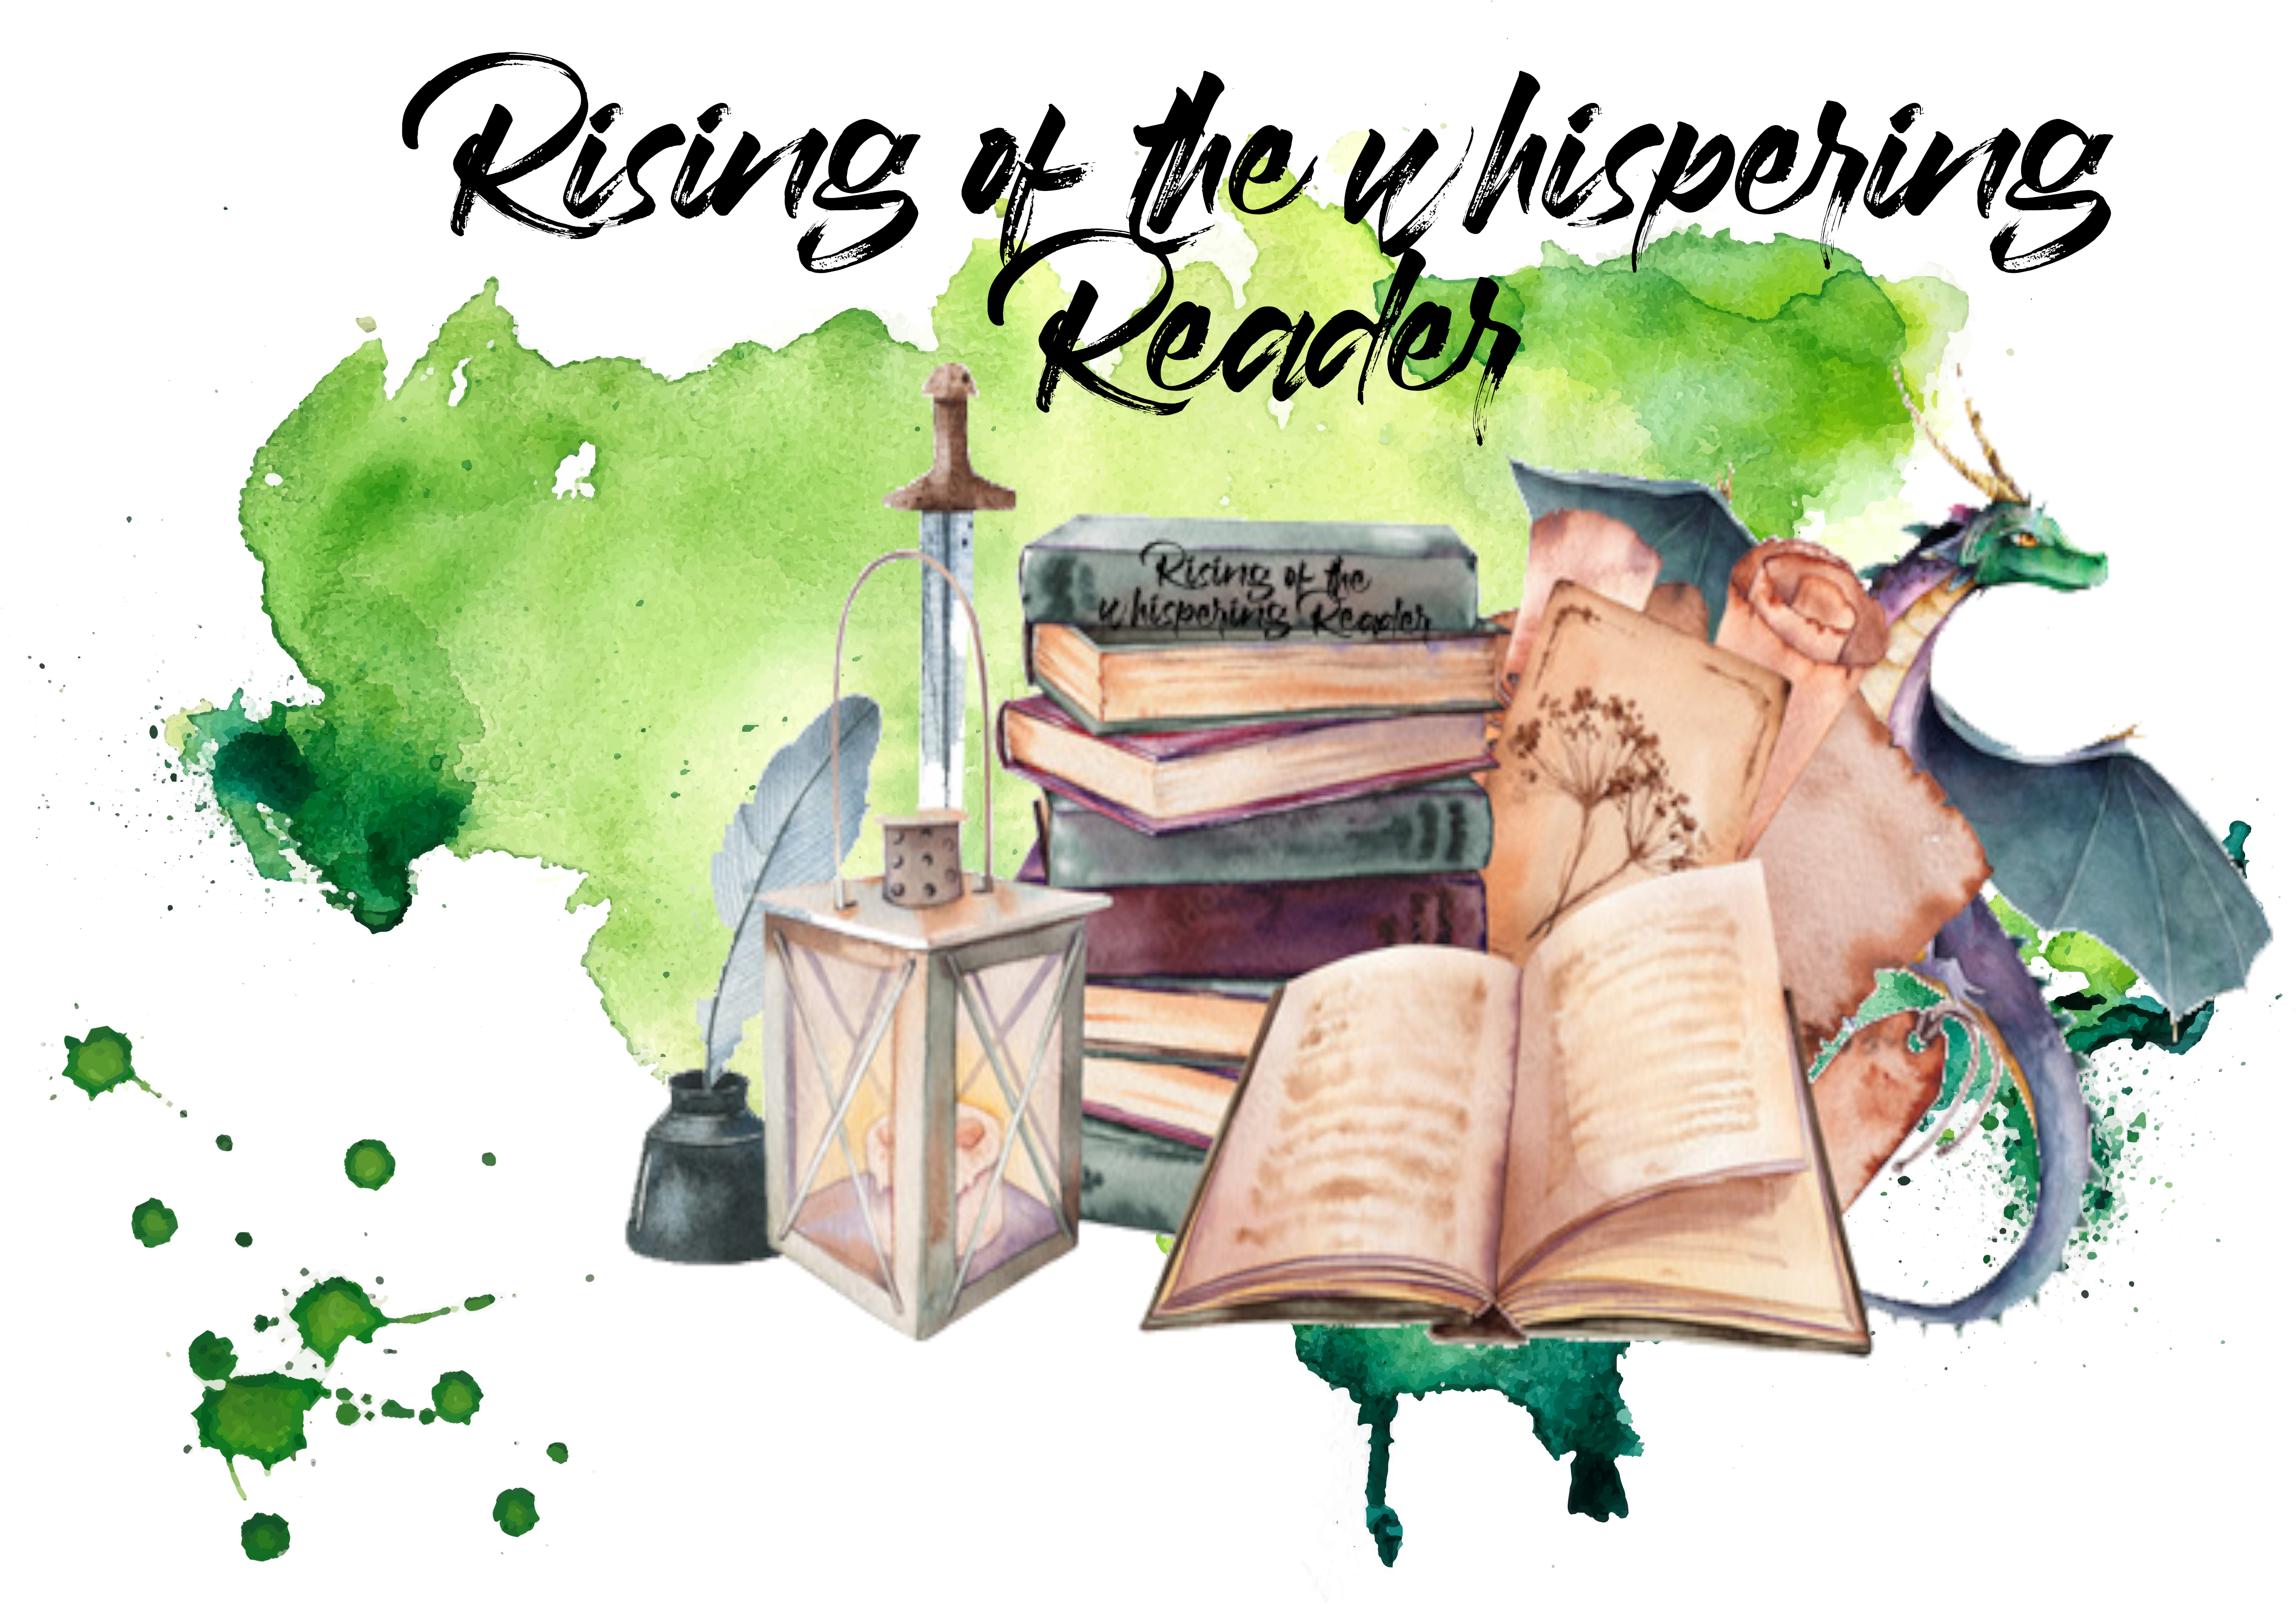 Rising of the whispering Reader – Aufgaben im September